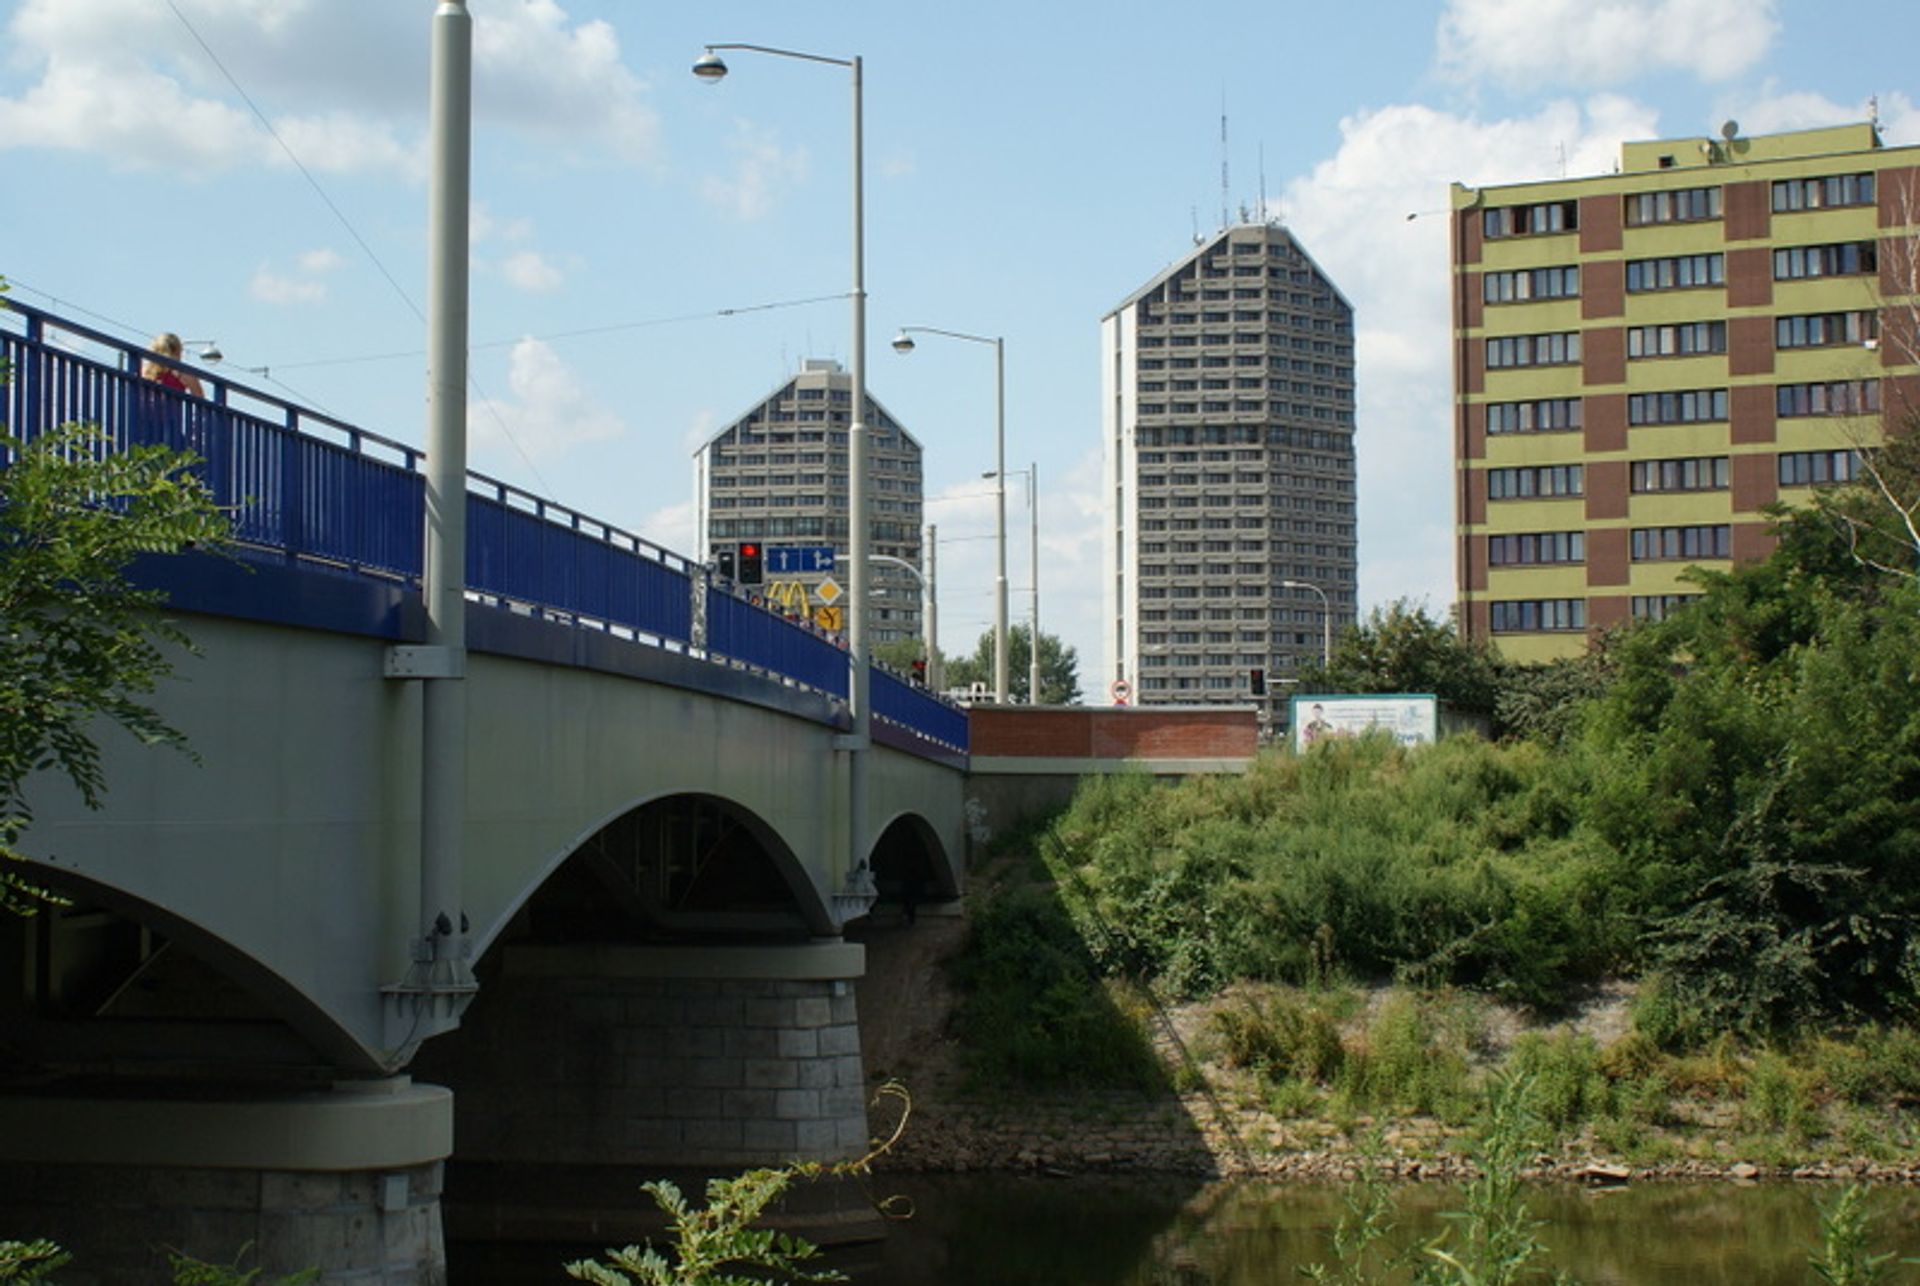  Wrocławianie mają niepowtarzalną szansę spotkać się z miejskimi urbanistami